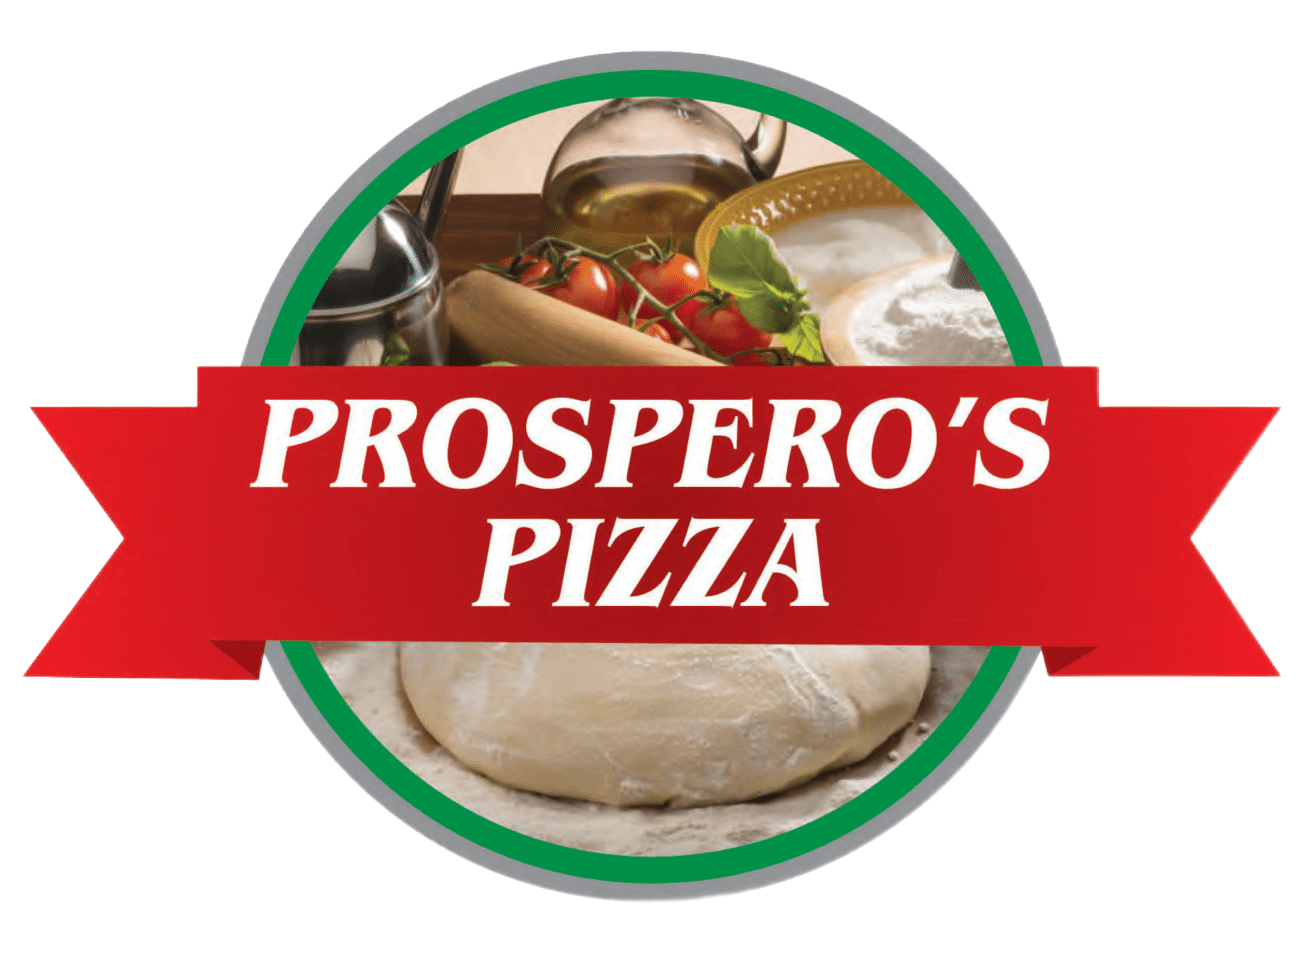 Prospero’s Pizza